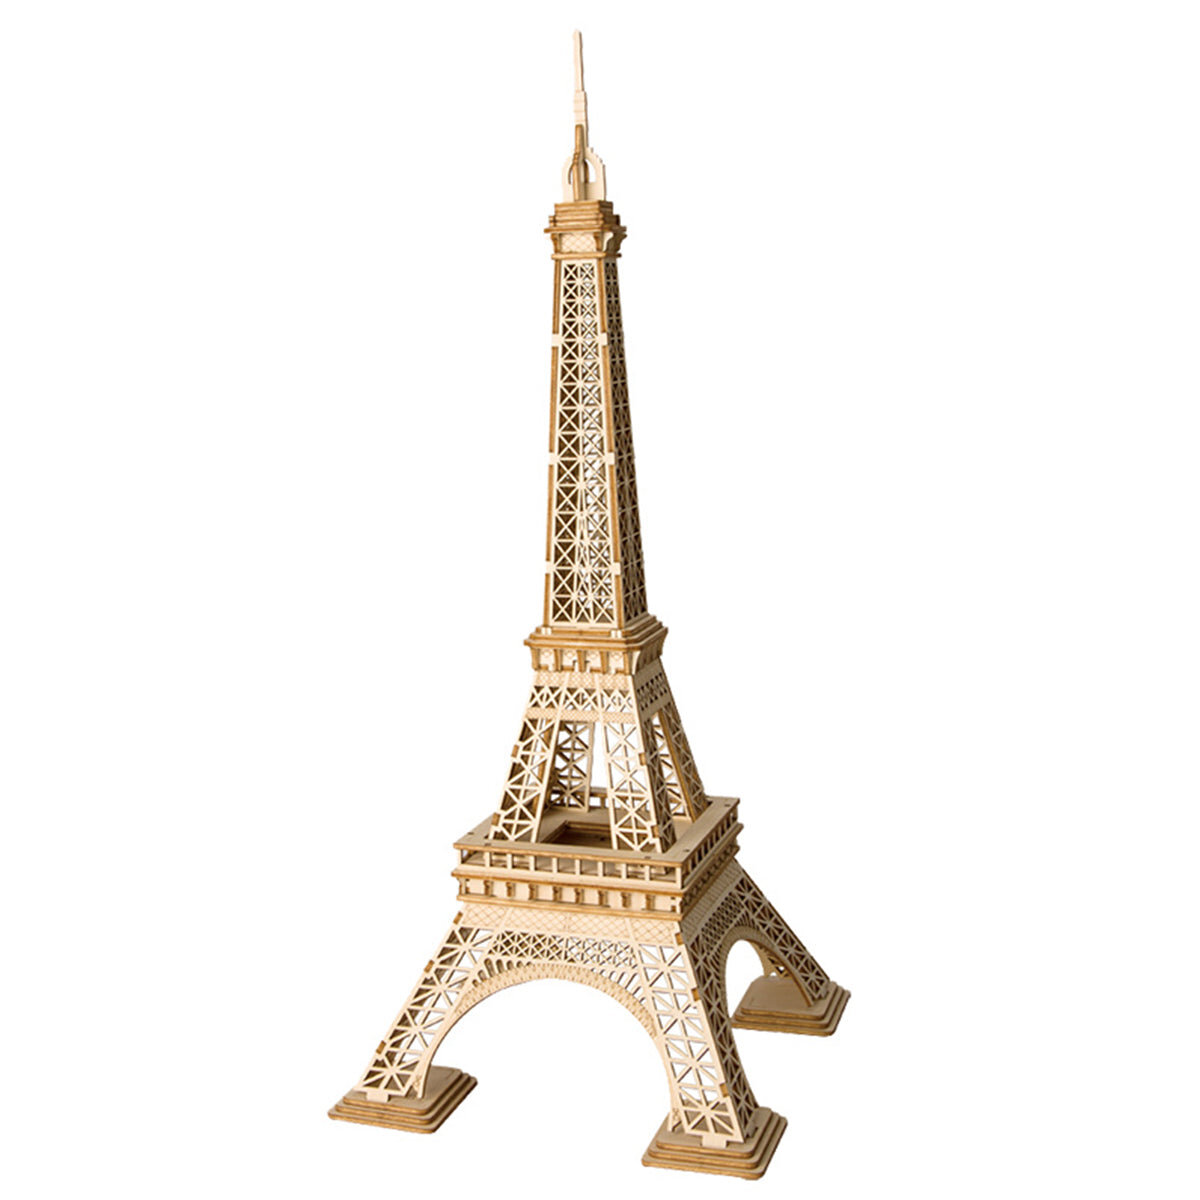 3D-Puzzle aus Holz - Modell des Eiffelturms Rolife TG501